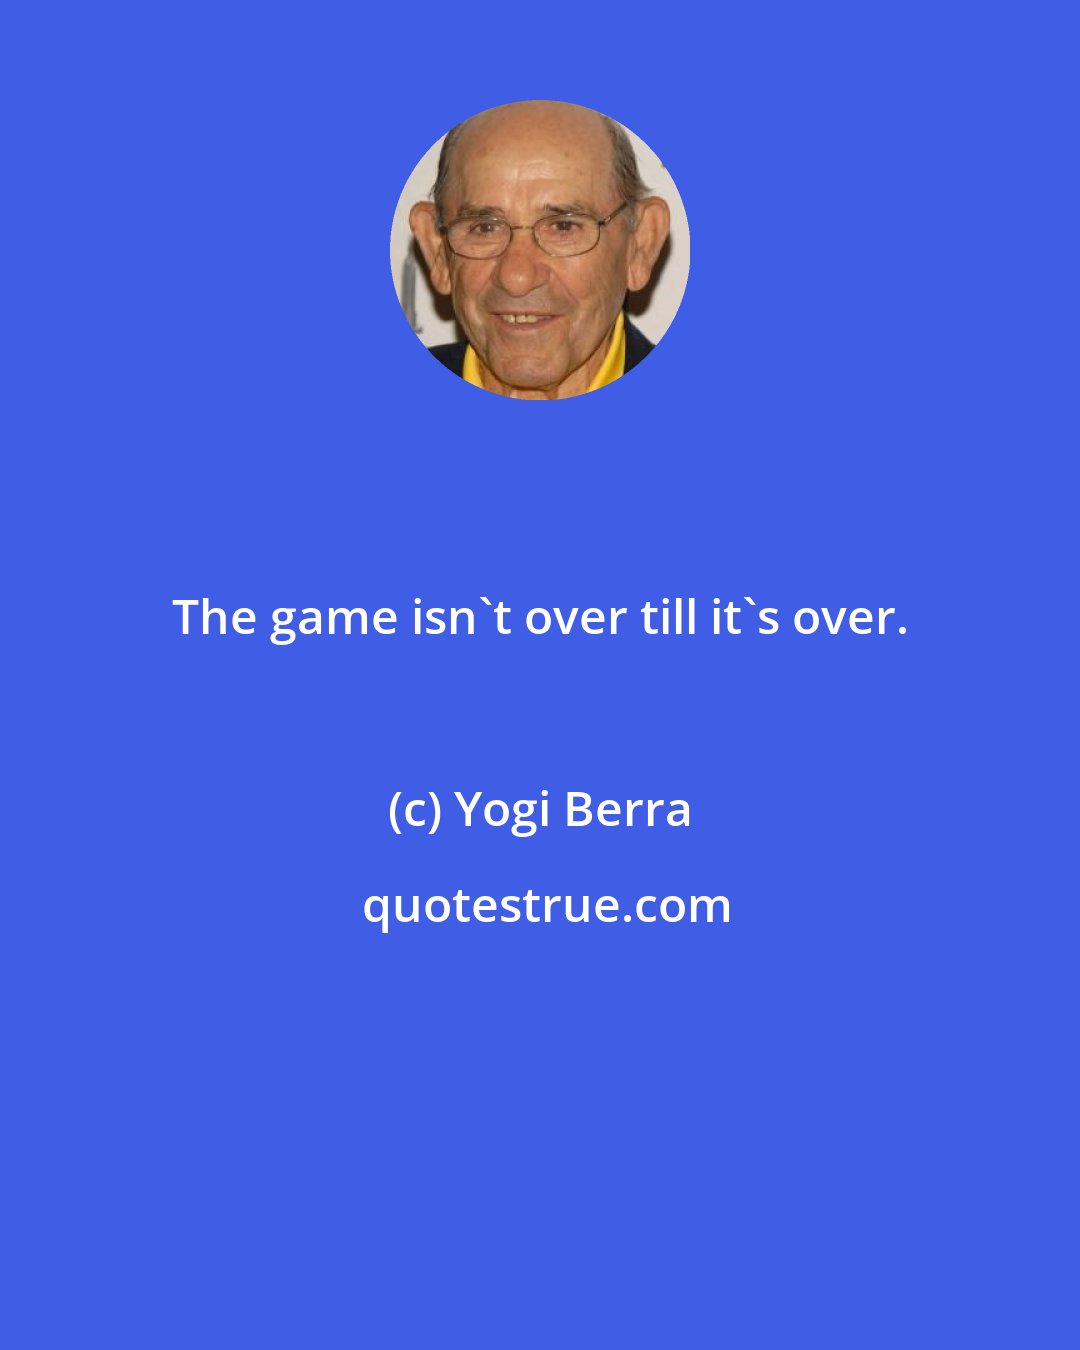 Yogi Berra: The game isn't over till it's over.